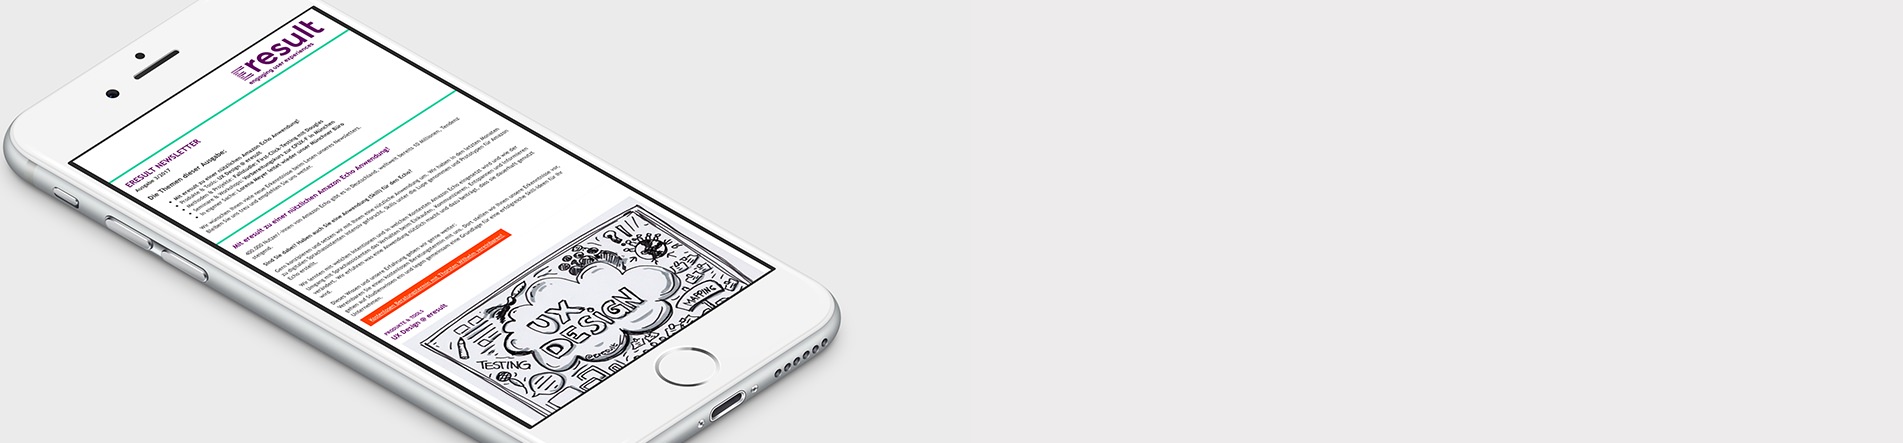 Bild eines Smartphones vor weißem Hintergrund, die eine Website anzeigt.